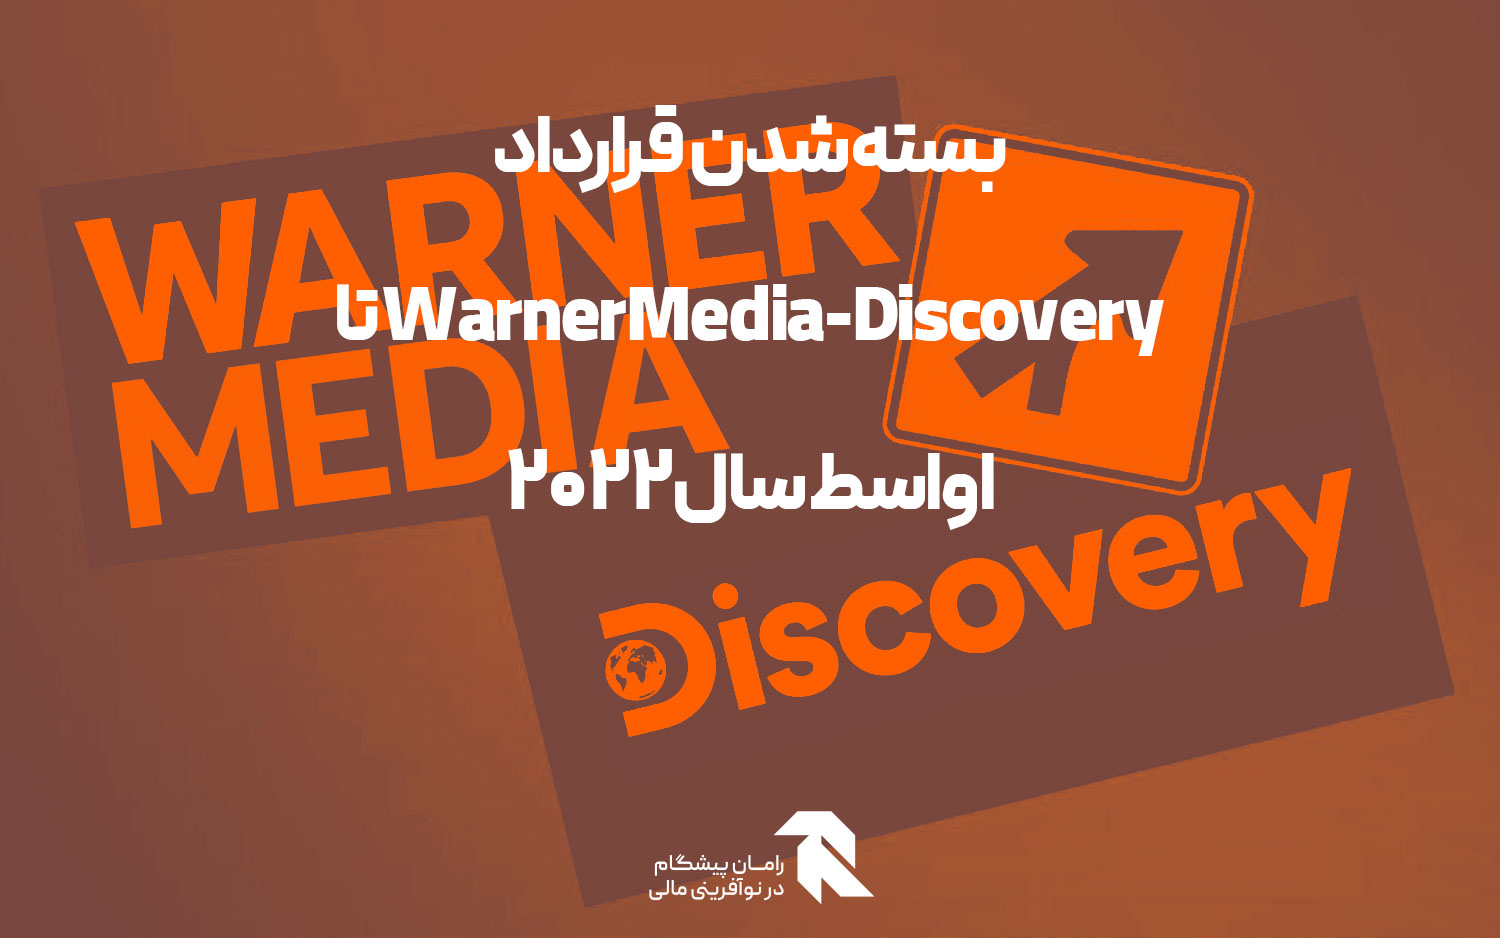 بسته شدن قرارداد WarnerMedia-Discovery تا اواسط سال 2022